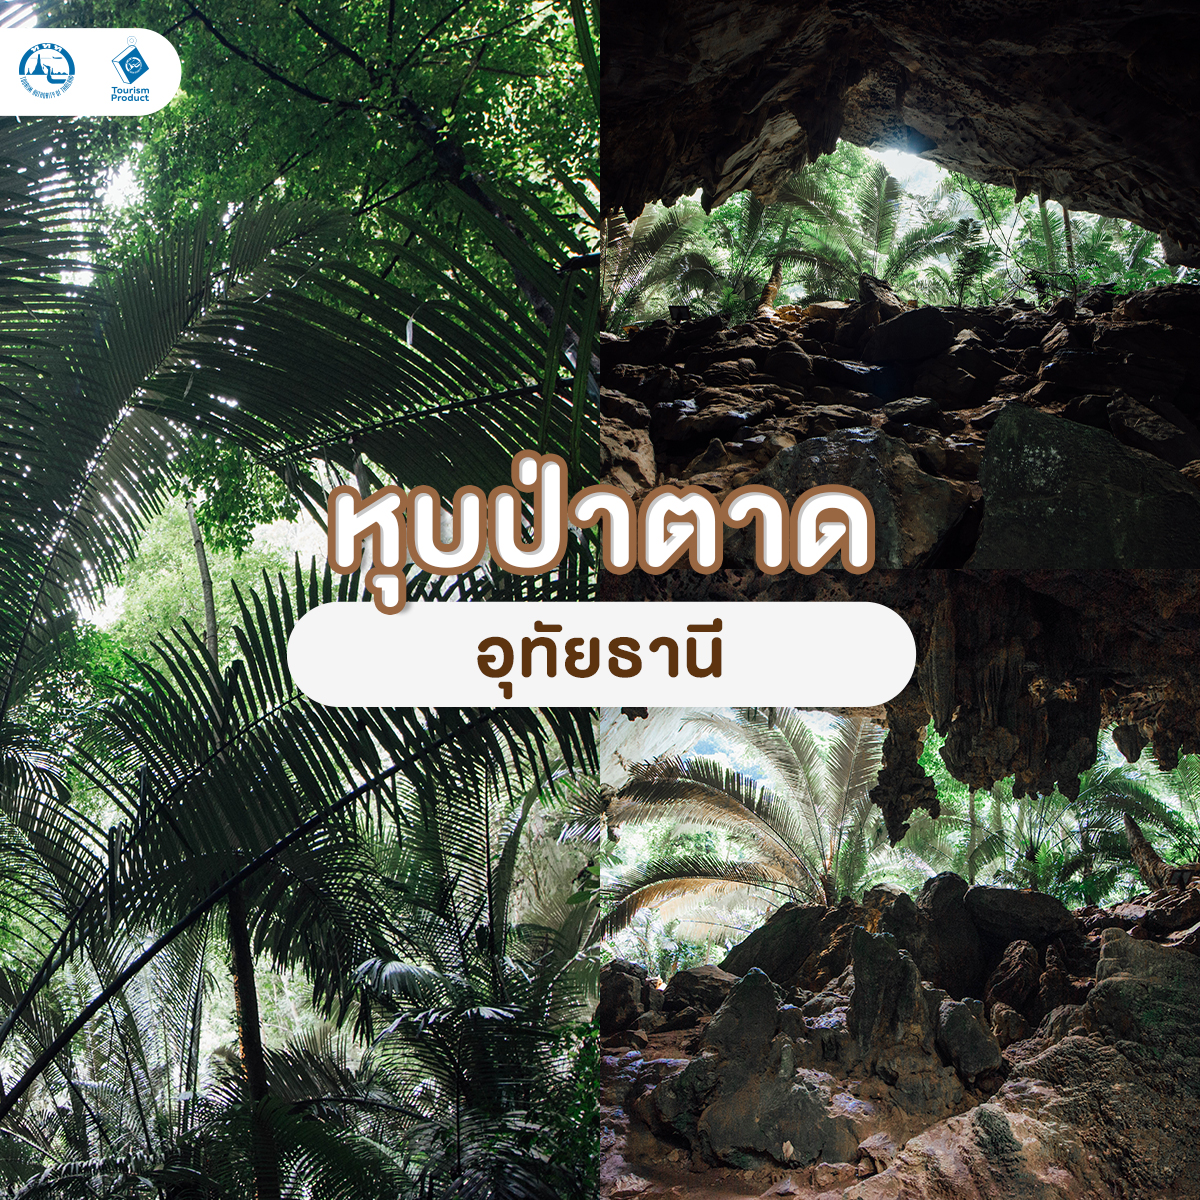 ปักหมุด UNSEEN เมืองไทย สวยเเค่ไหนต้องตามไปดู หุบป่าตาด